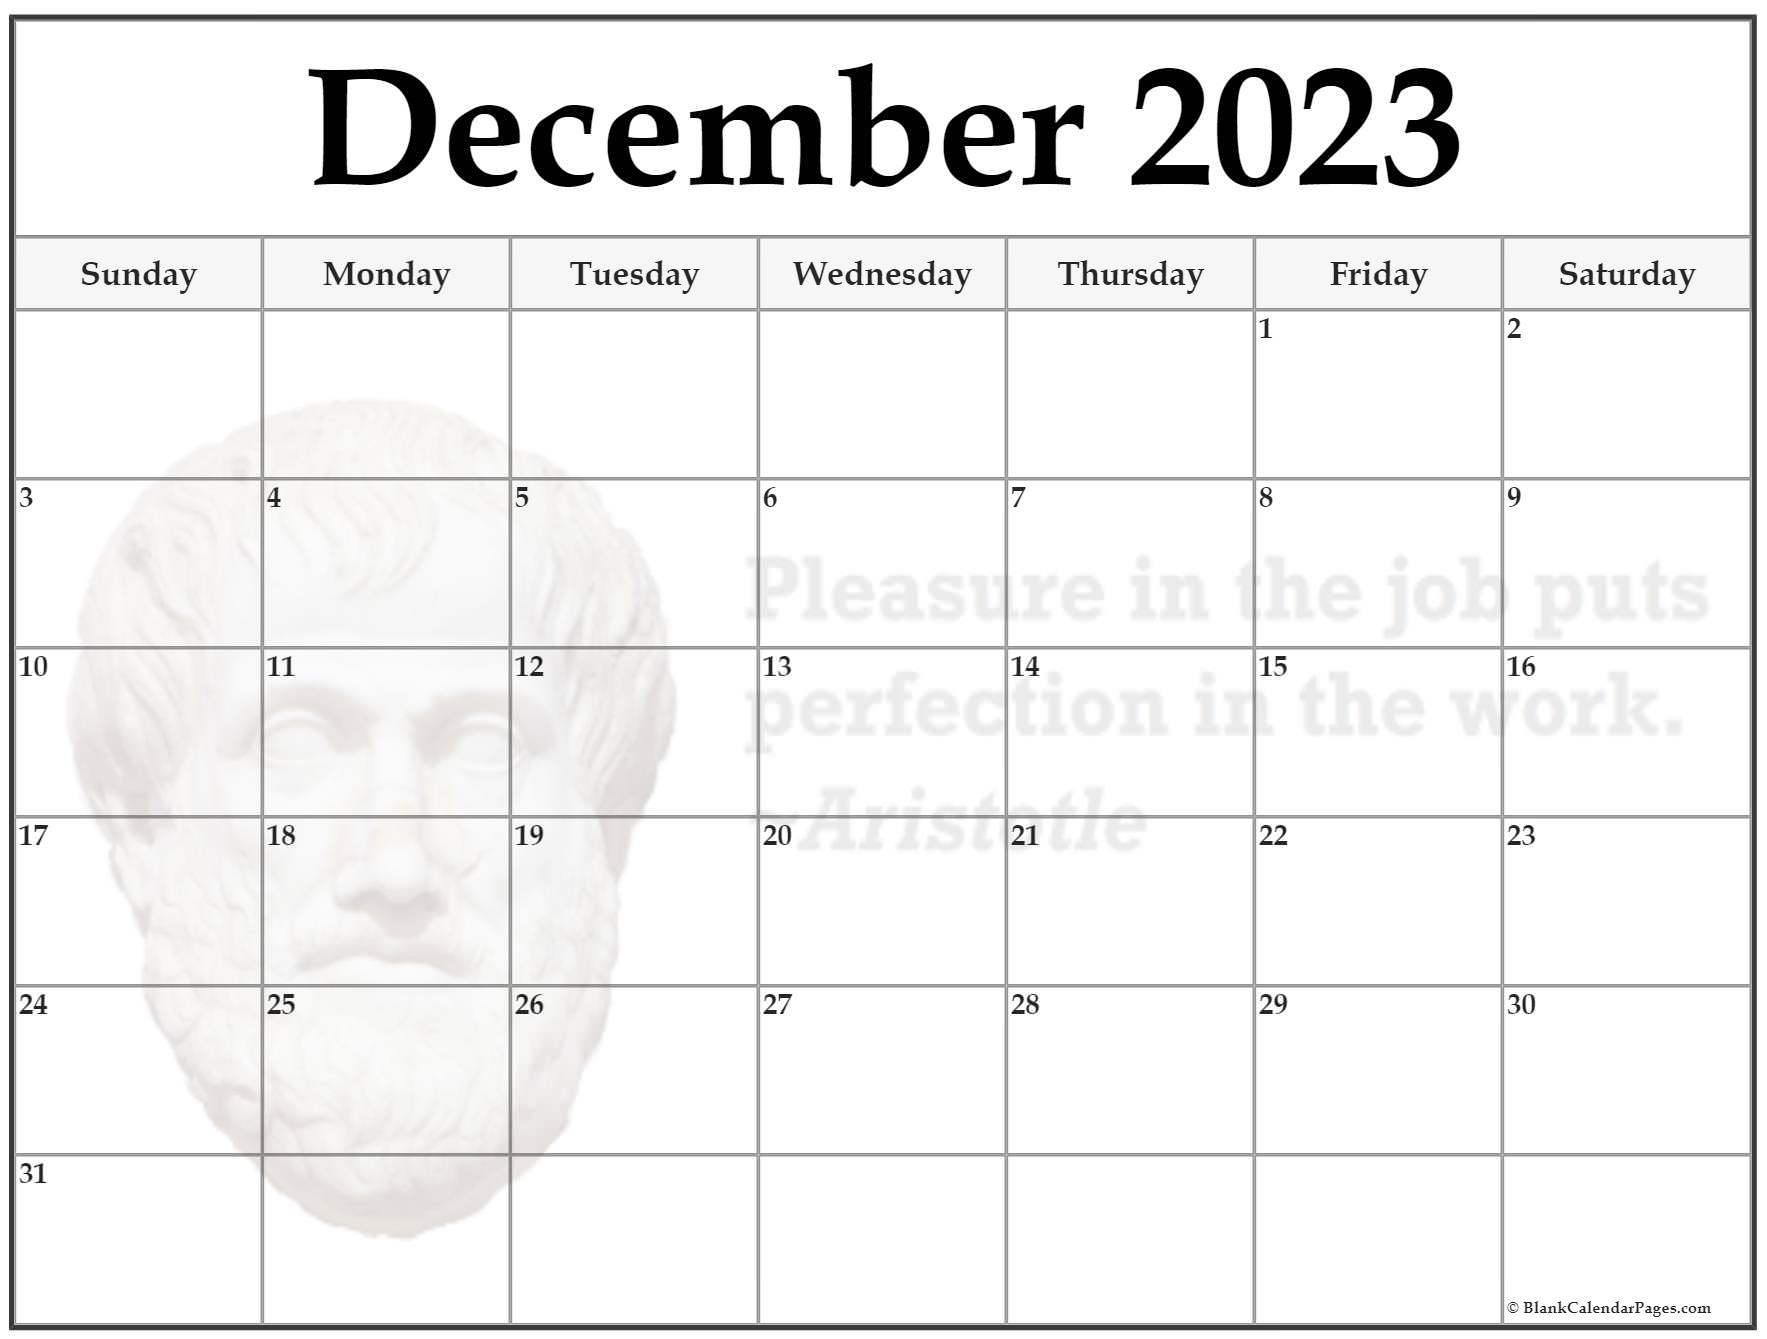 24-december-2023-quote-calendars